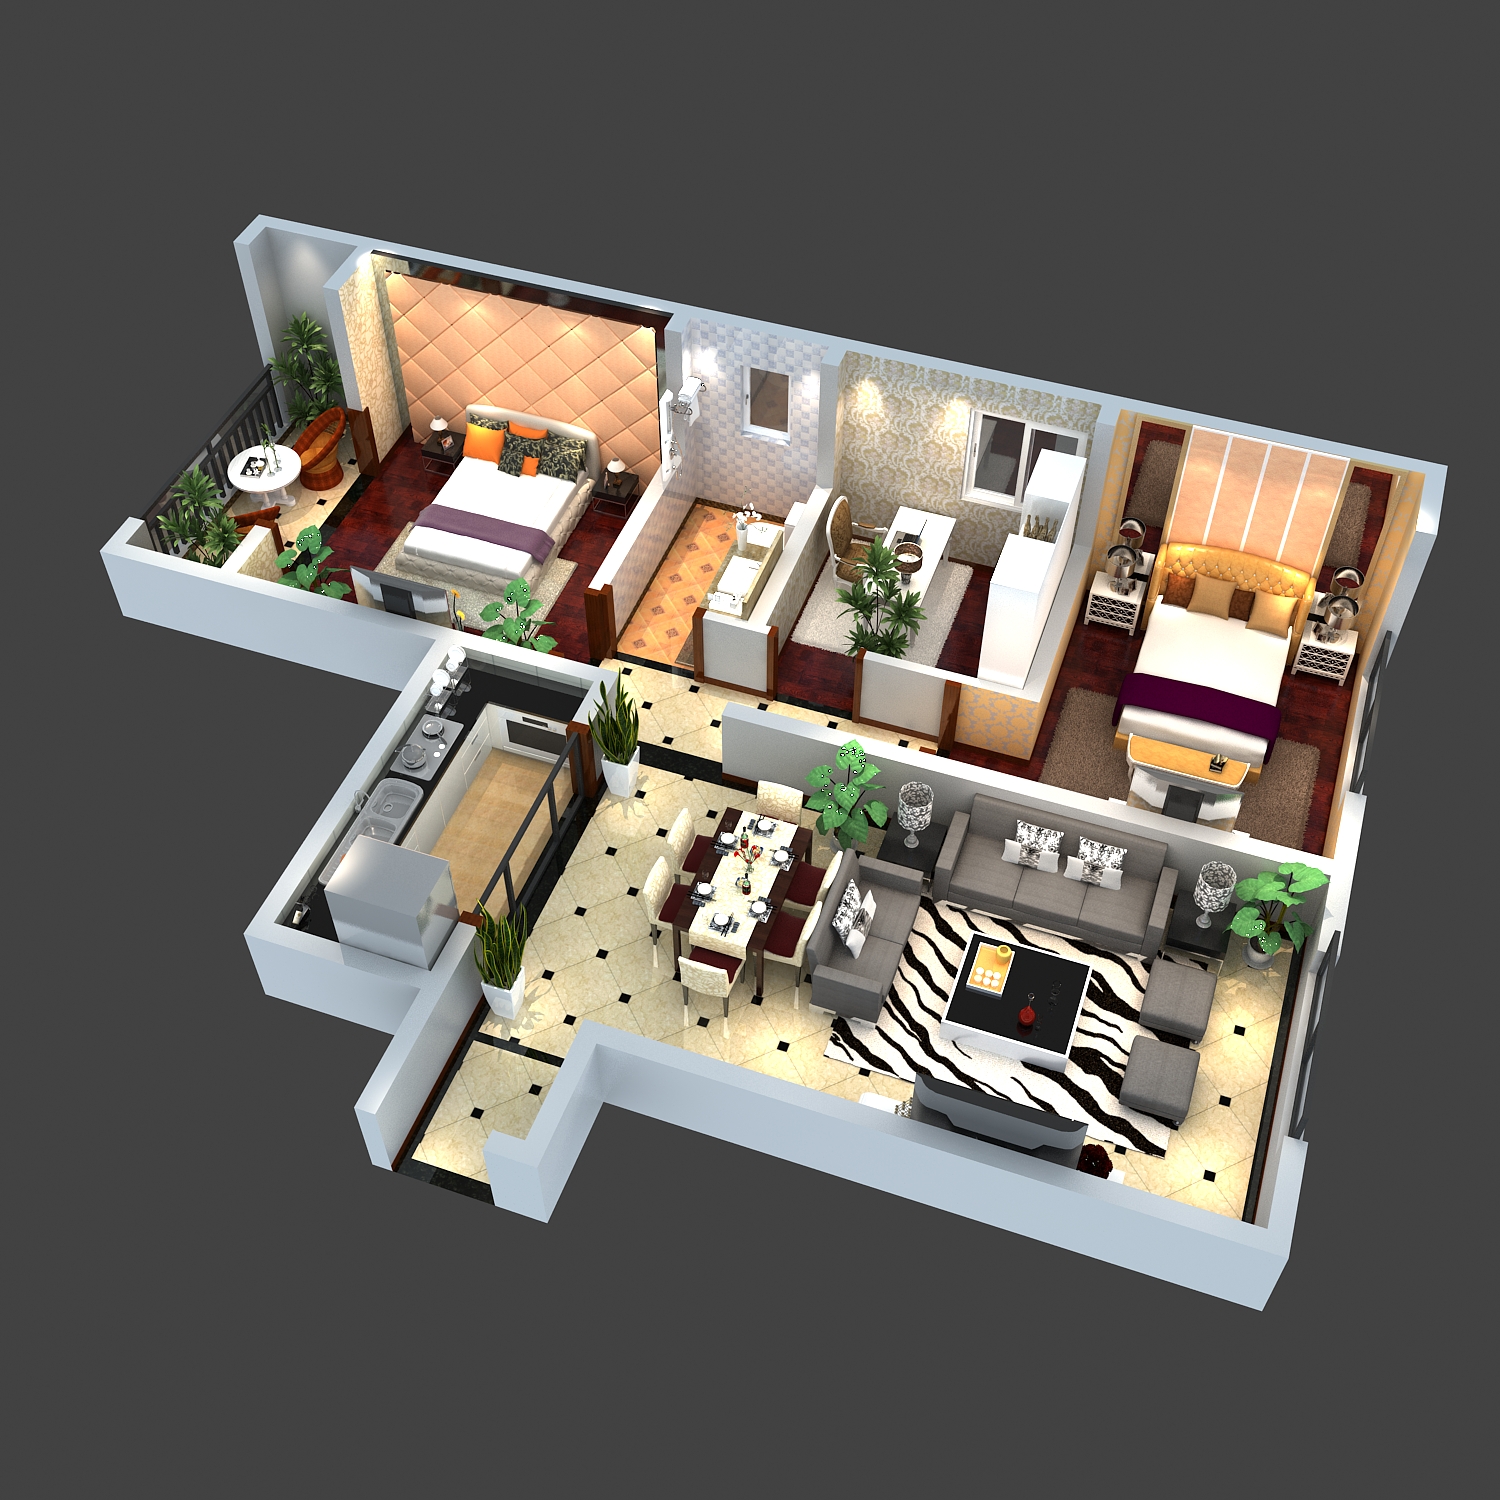 现代两室一厅室内设计家装户型图鸟瞰图3d模型下载